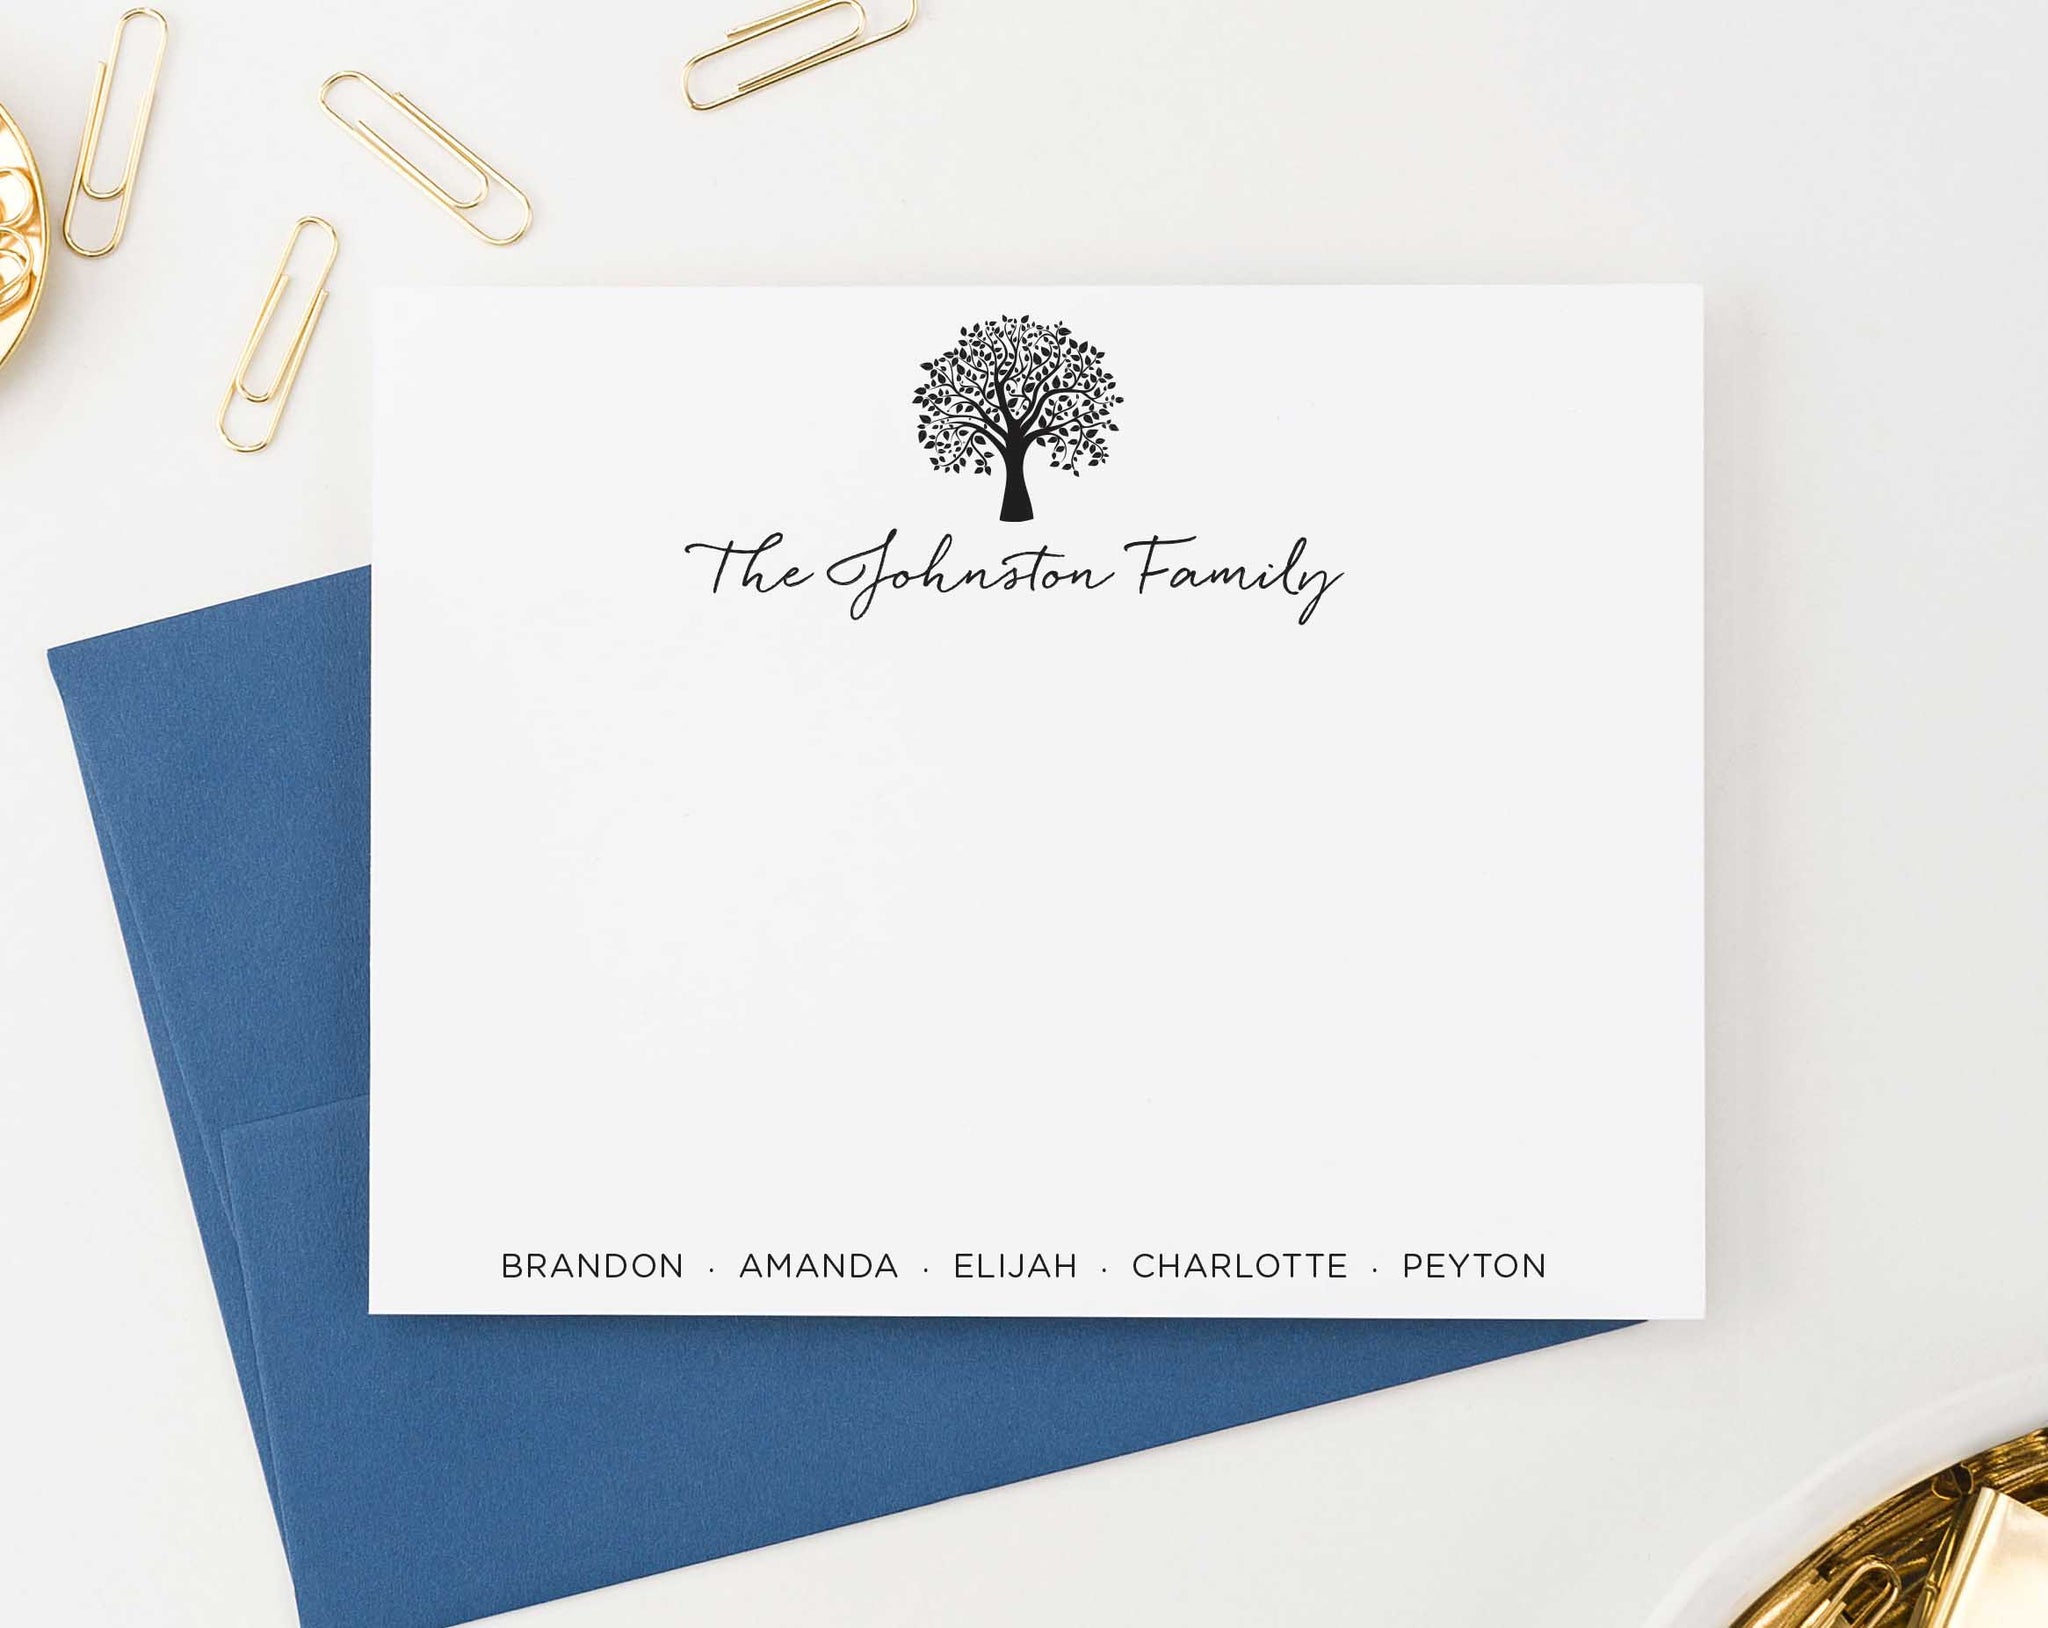 20+ Family Tree Templates & Chart Layouts